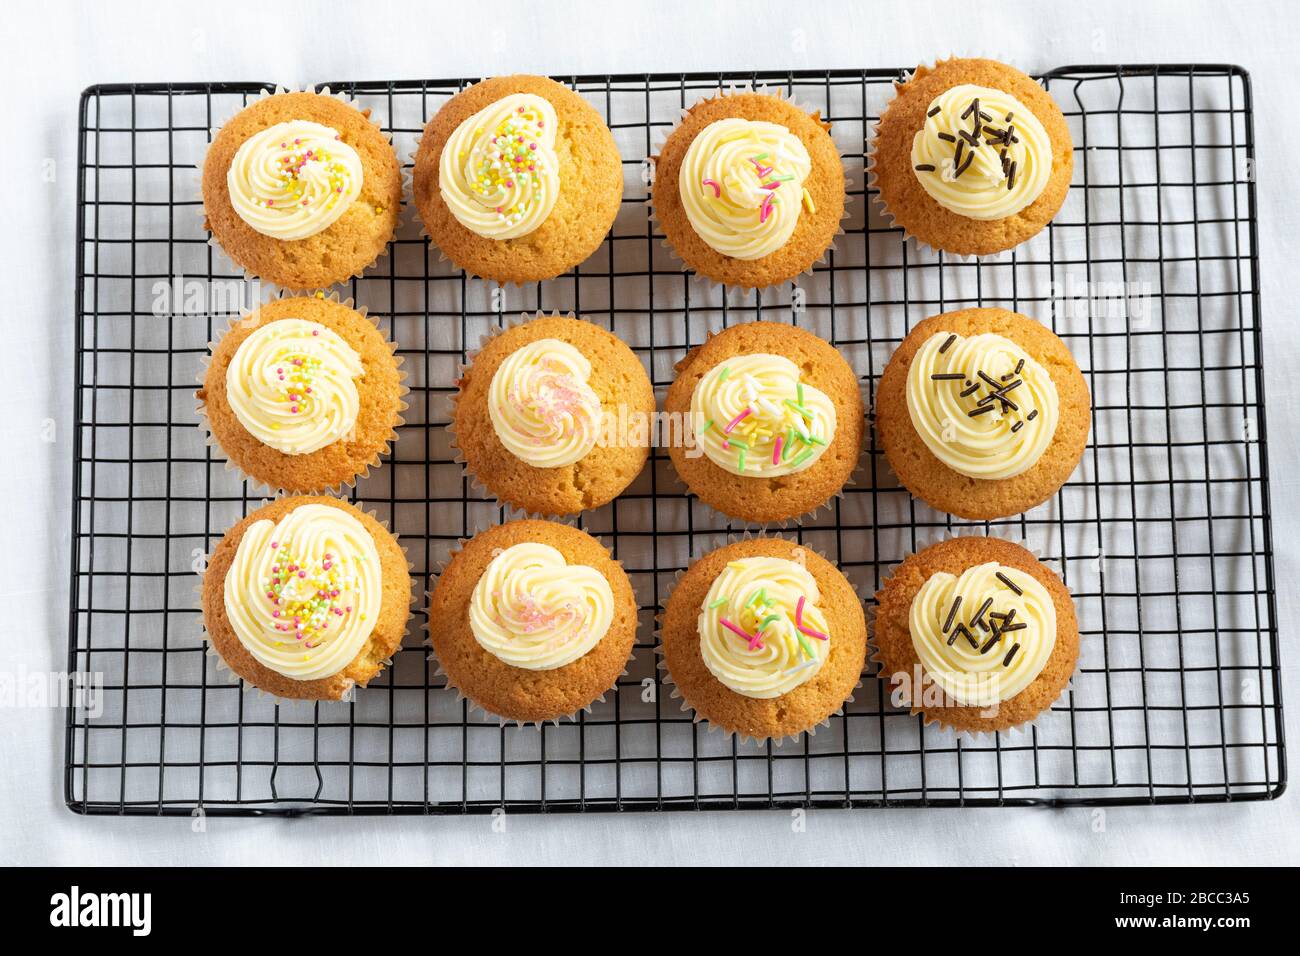 Nahaufnahme von hausgemachten Cupcakes/Feenkuchen auf einem Kühltablett Stockfoto